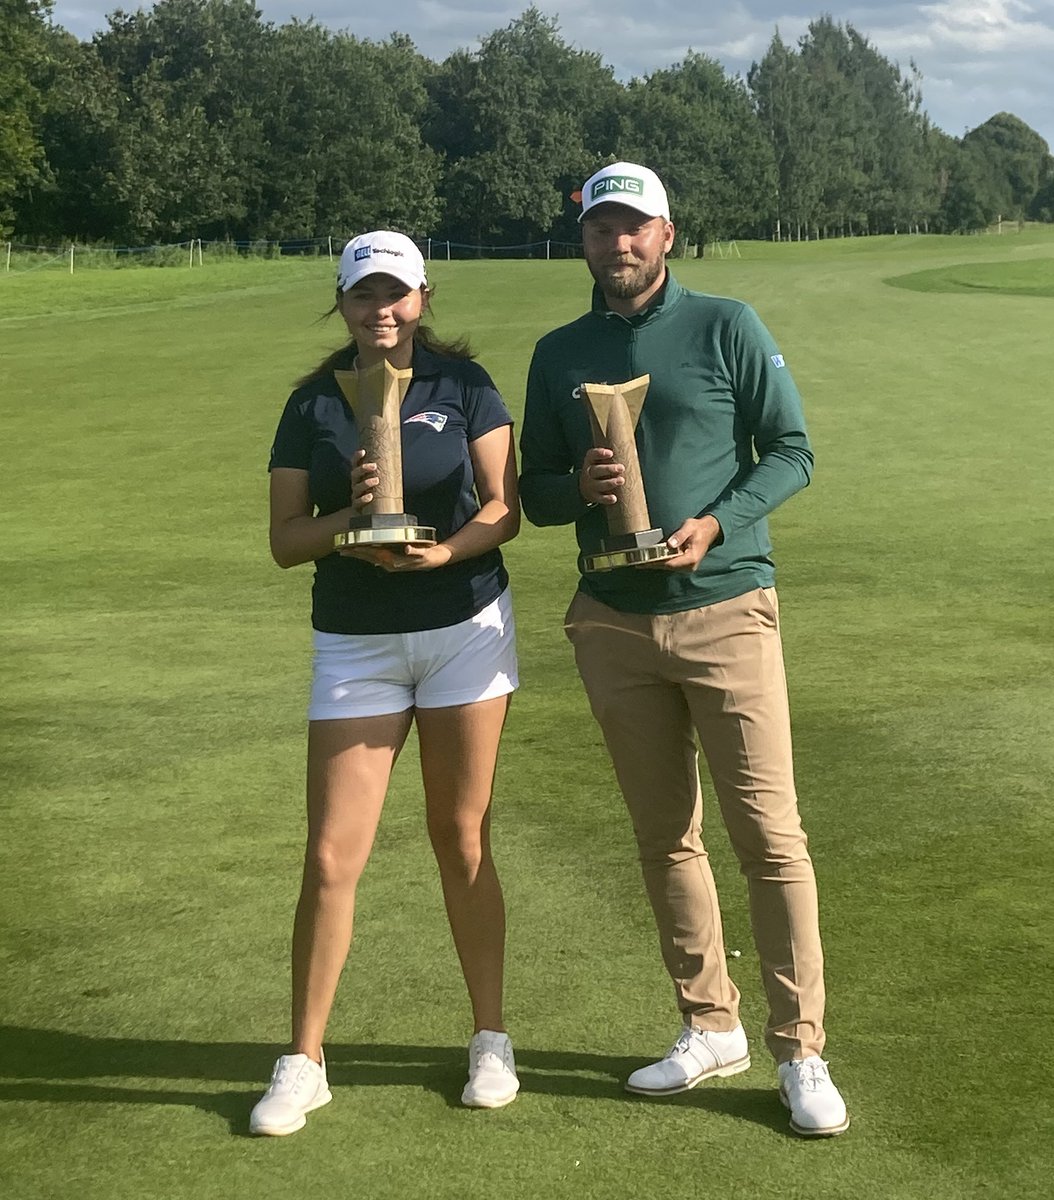 ⛳️ Congratulations Alexa Pano & Dan Brown - winning the @World_Inv_Golf at @GalgormResort & @CastlerockGC 2 great winners of an excellent event.